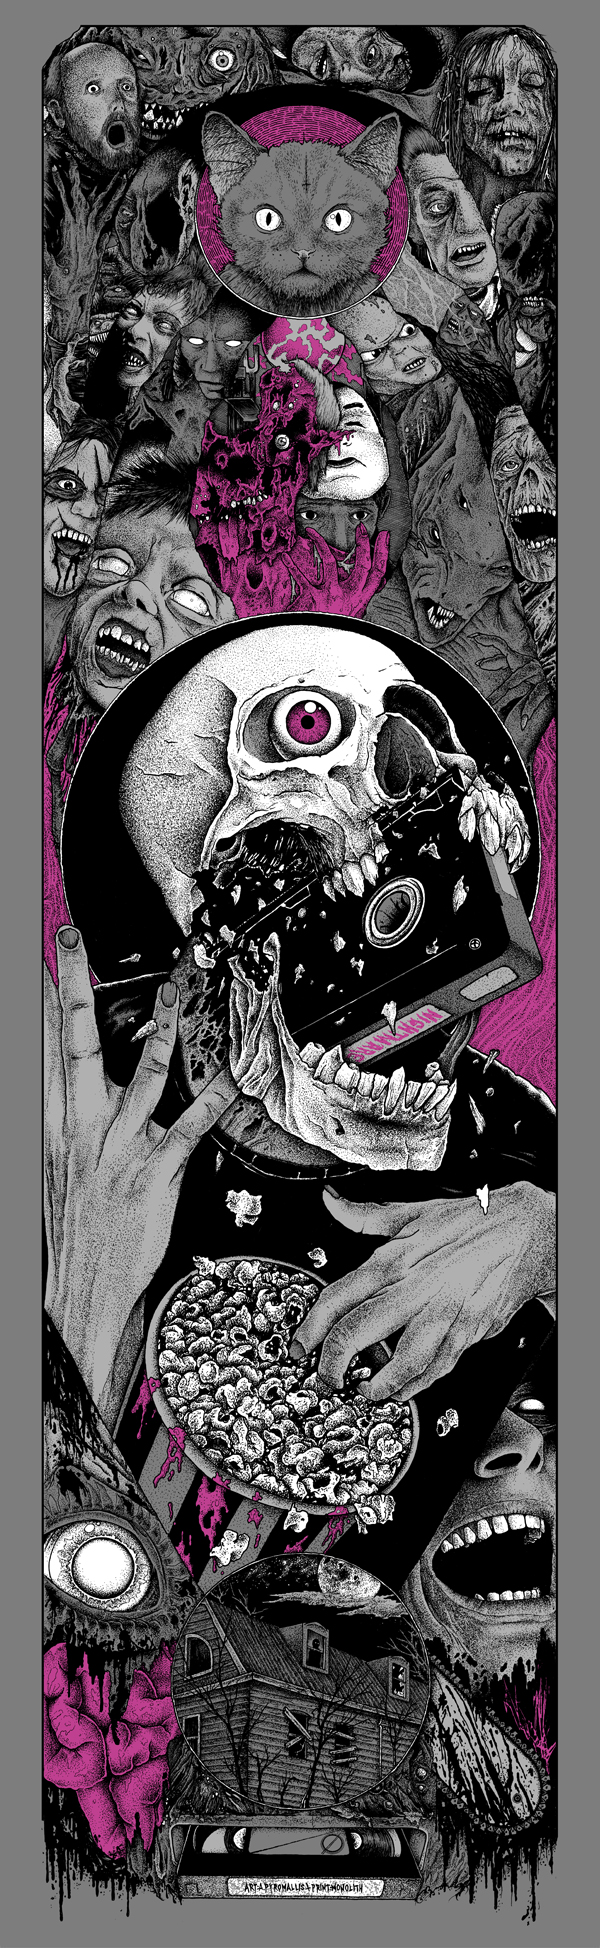 Dark and macabre illustrations - 2dartist magazine